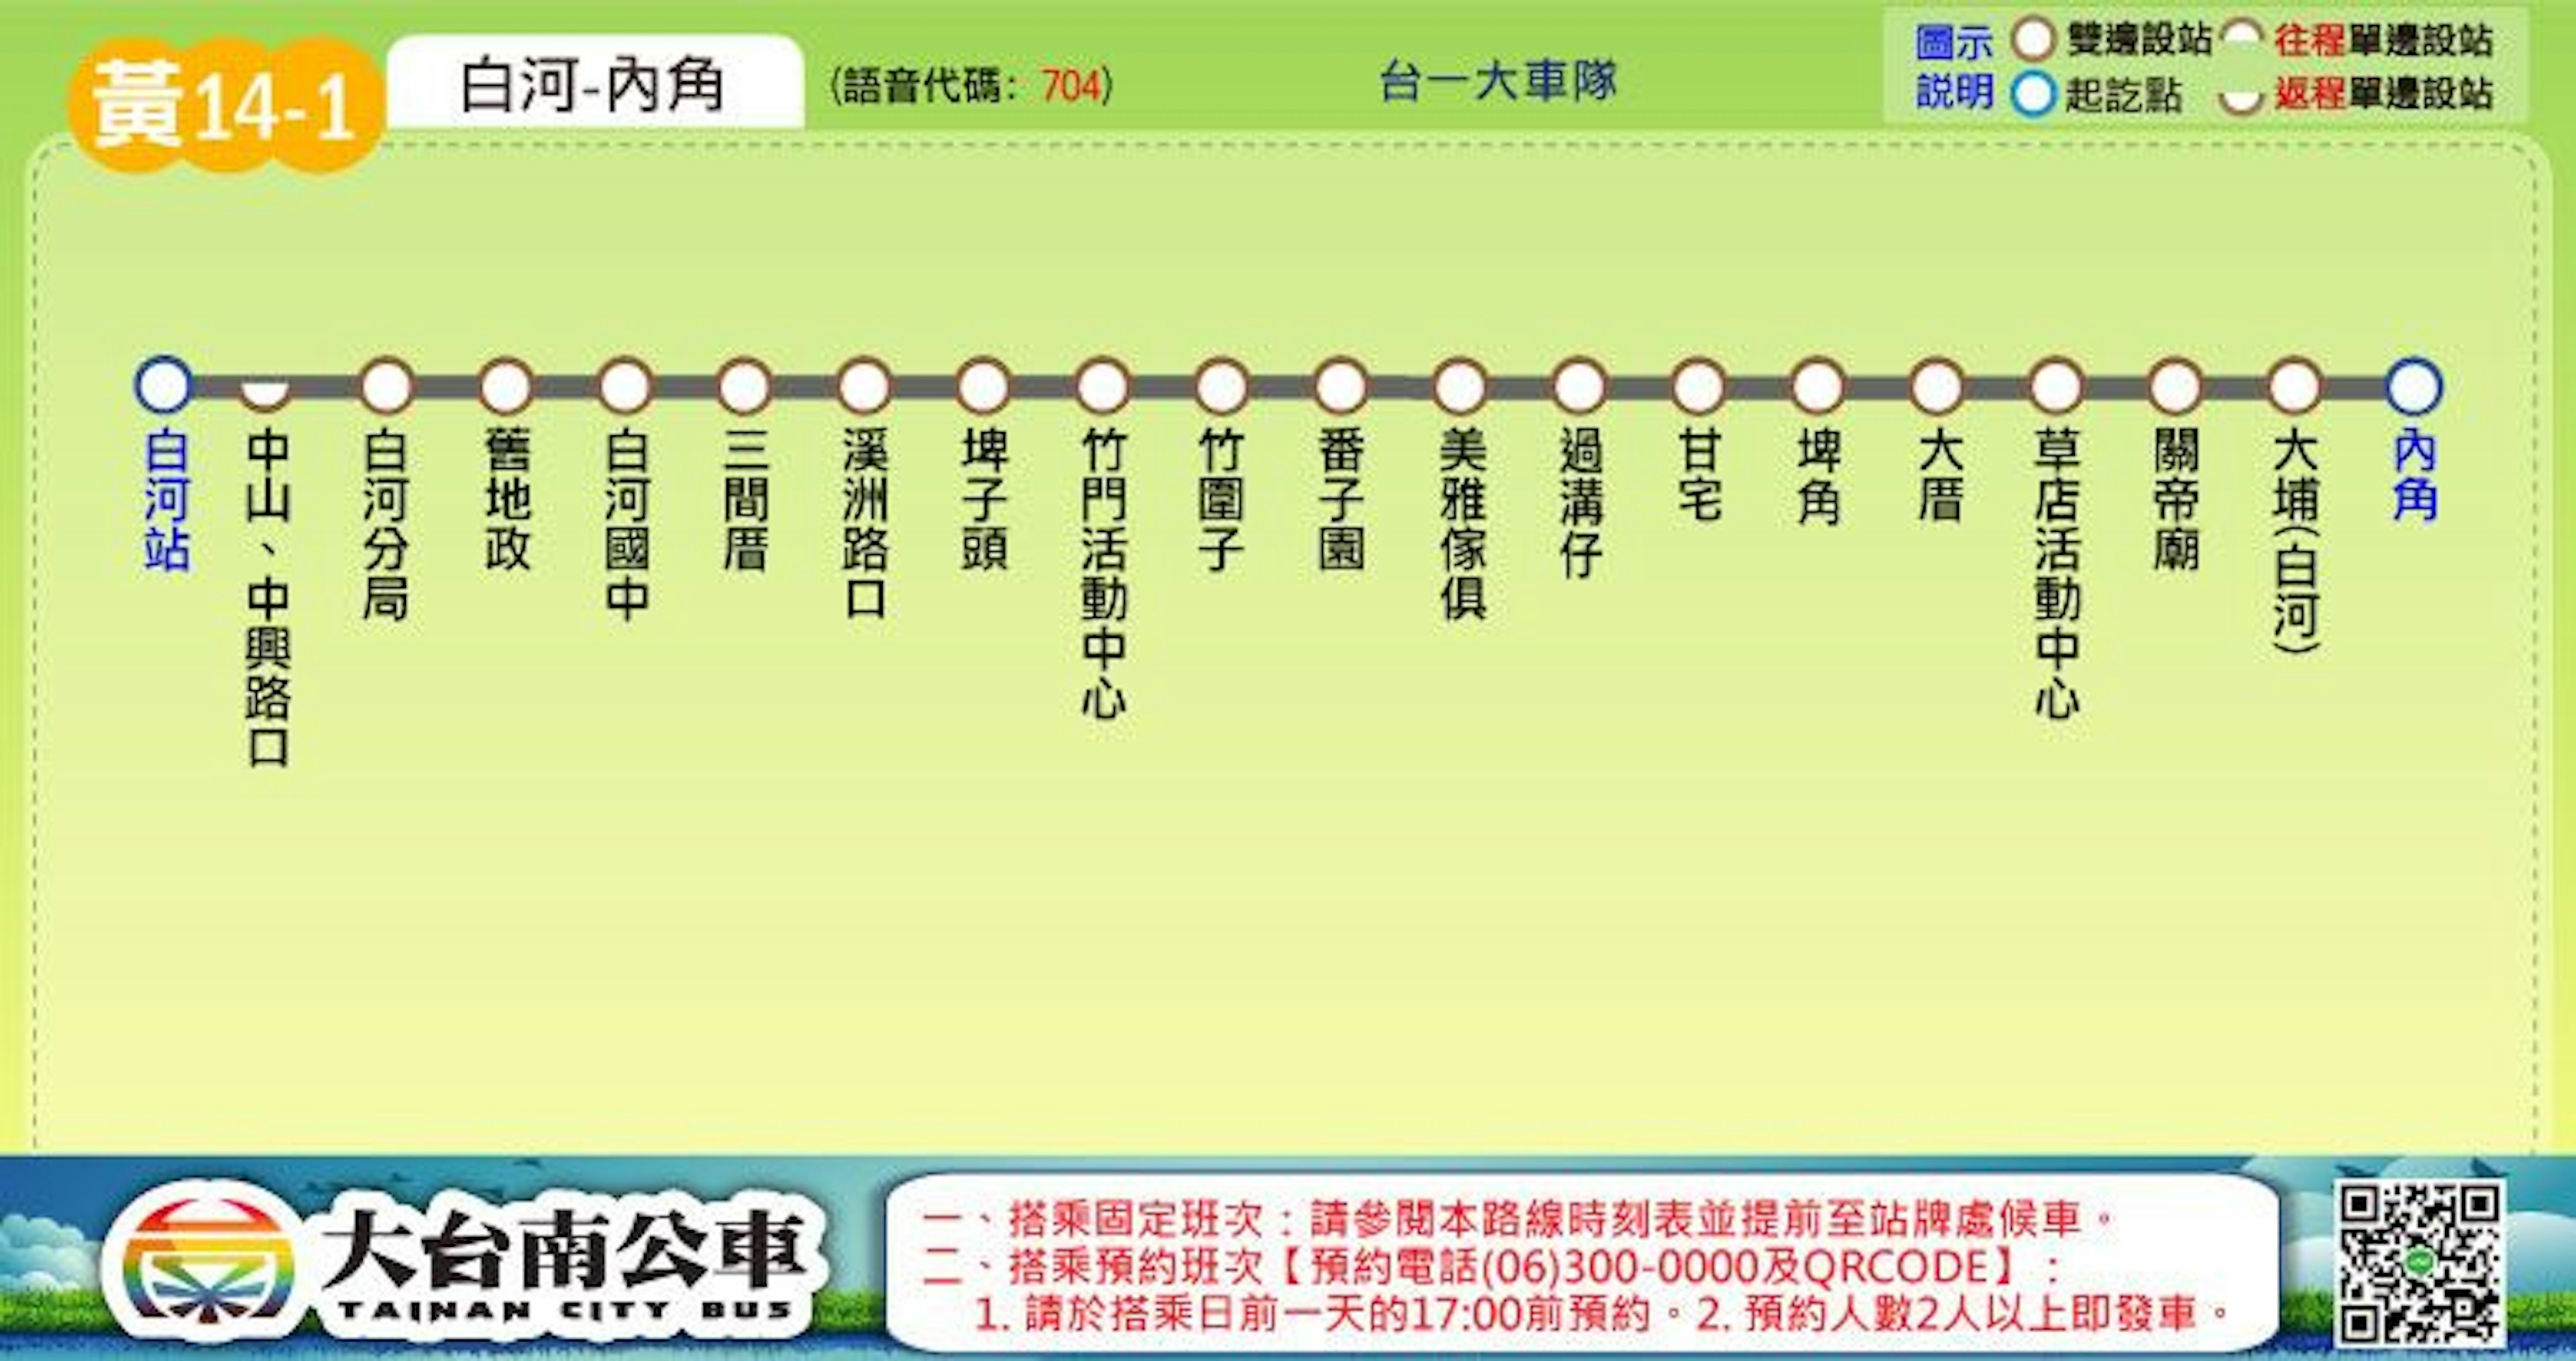 黃14-1路線圖-台南公車